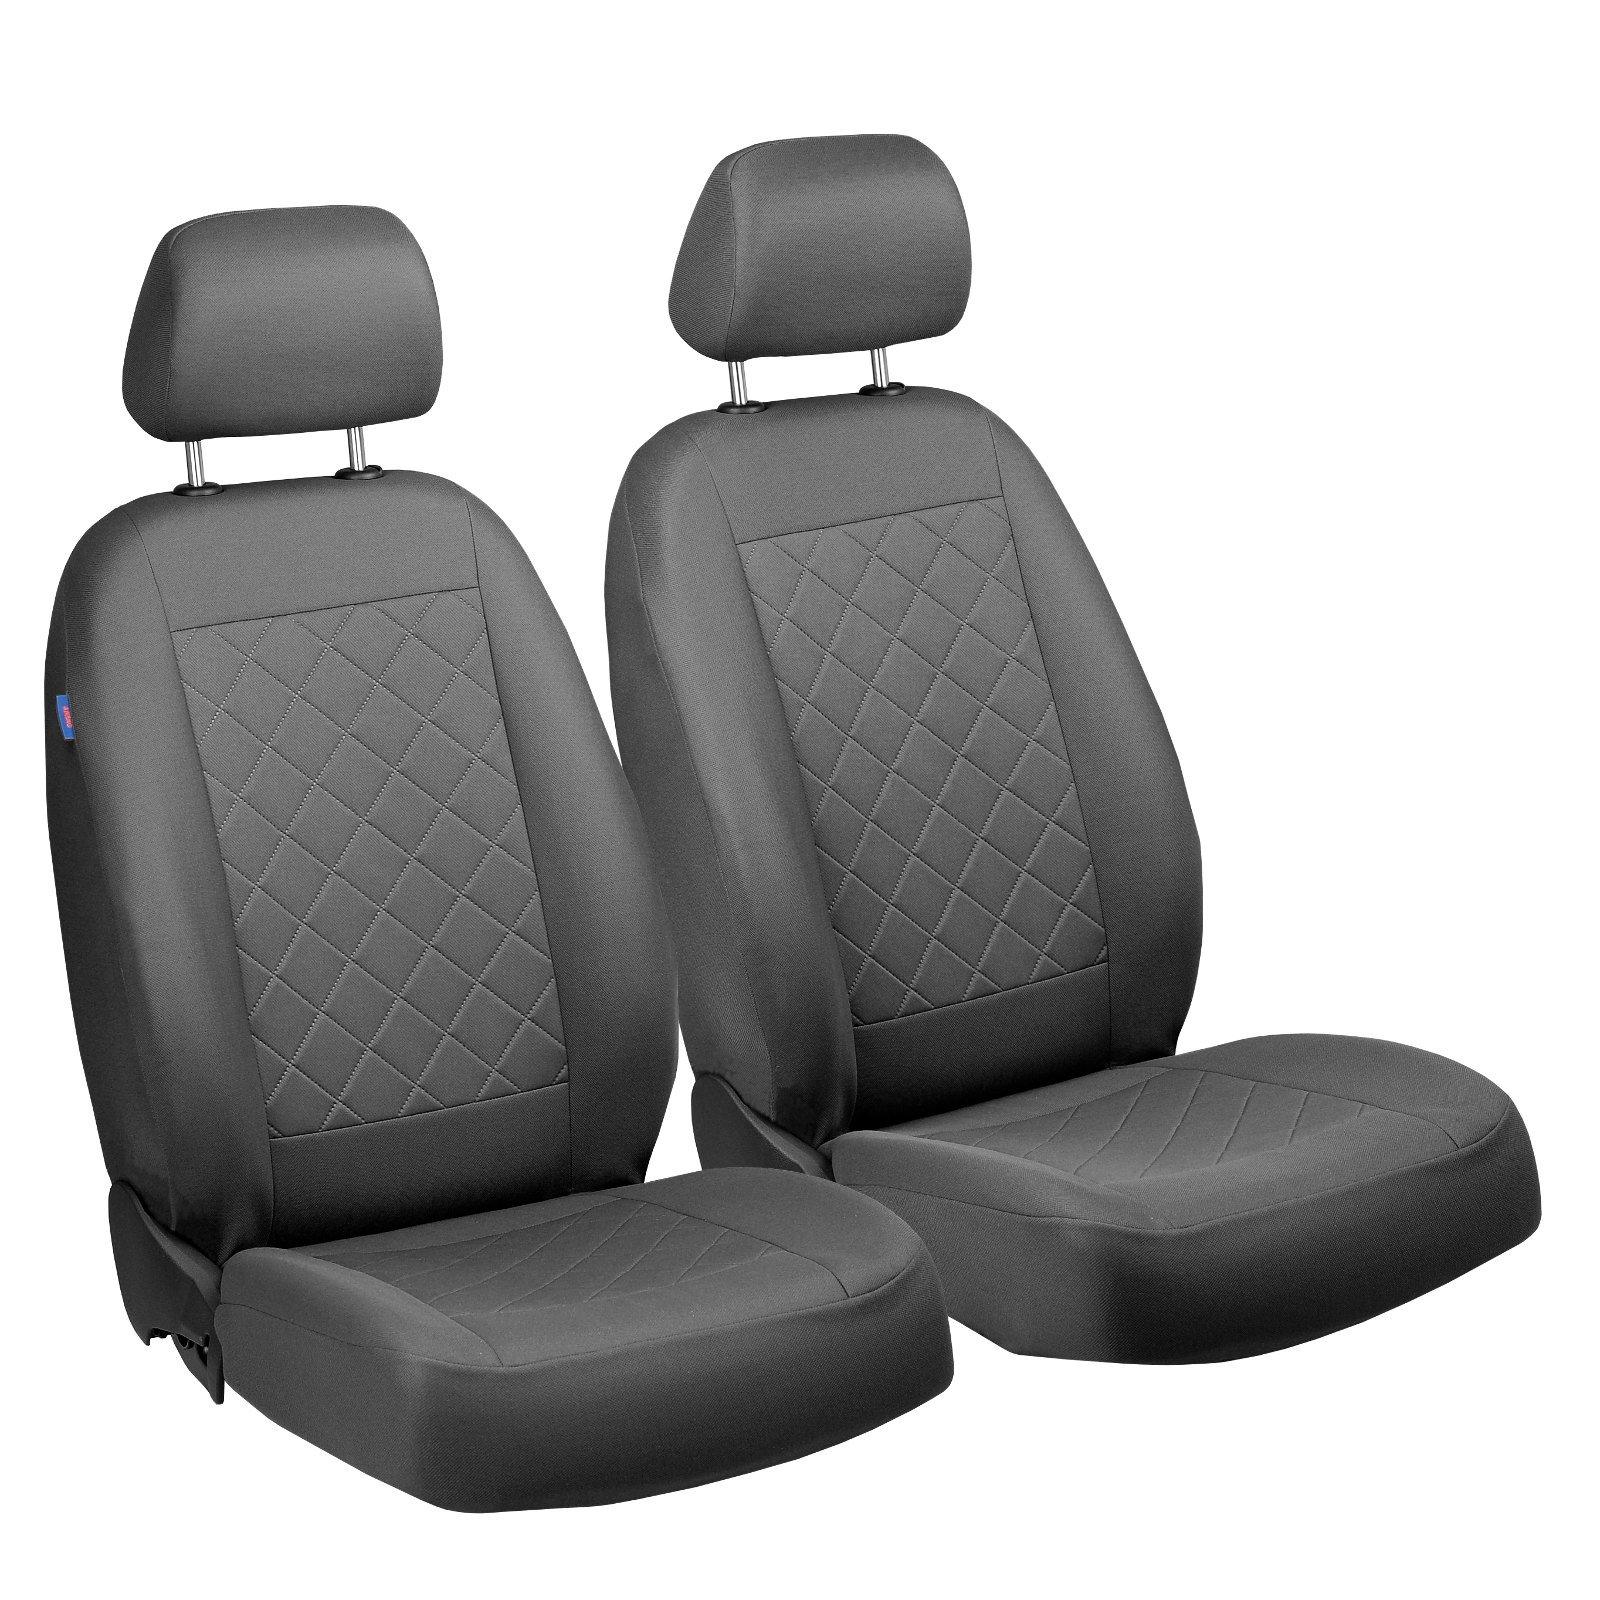 Taurus Vorne Sitzbezüge - für Fahrer und Beifahrer - Farbe Premium Grau Gepresstes Karomuster